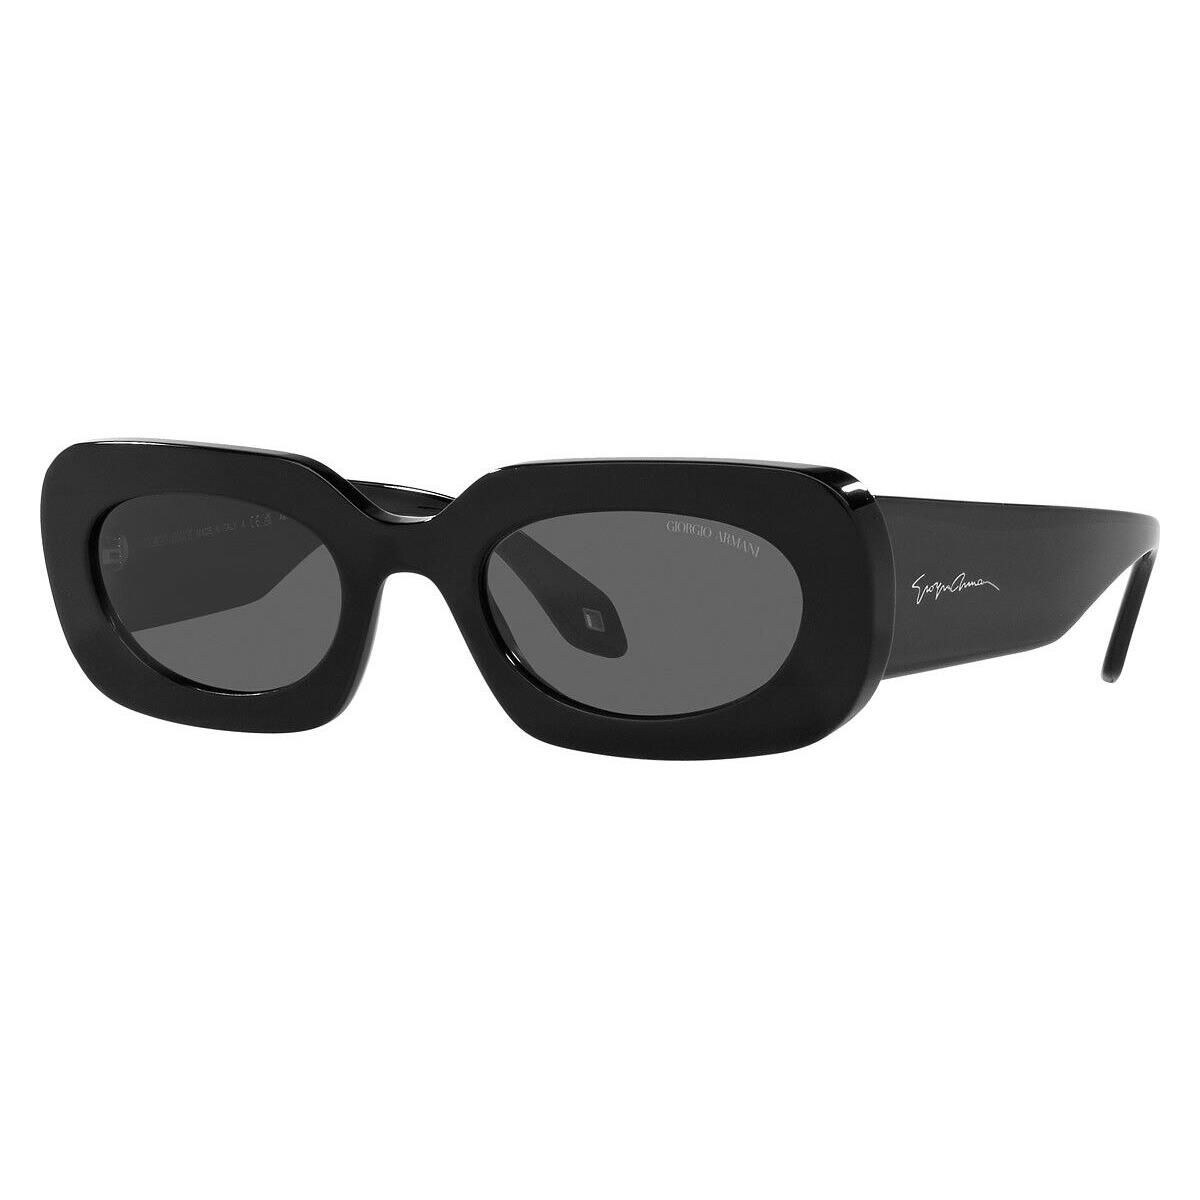 Giorgio Armani AR8182 Sunglasses Black Dark Gray 52mm